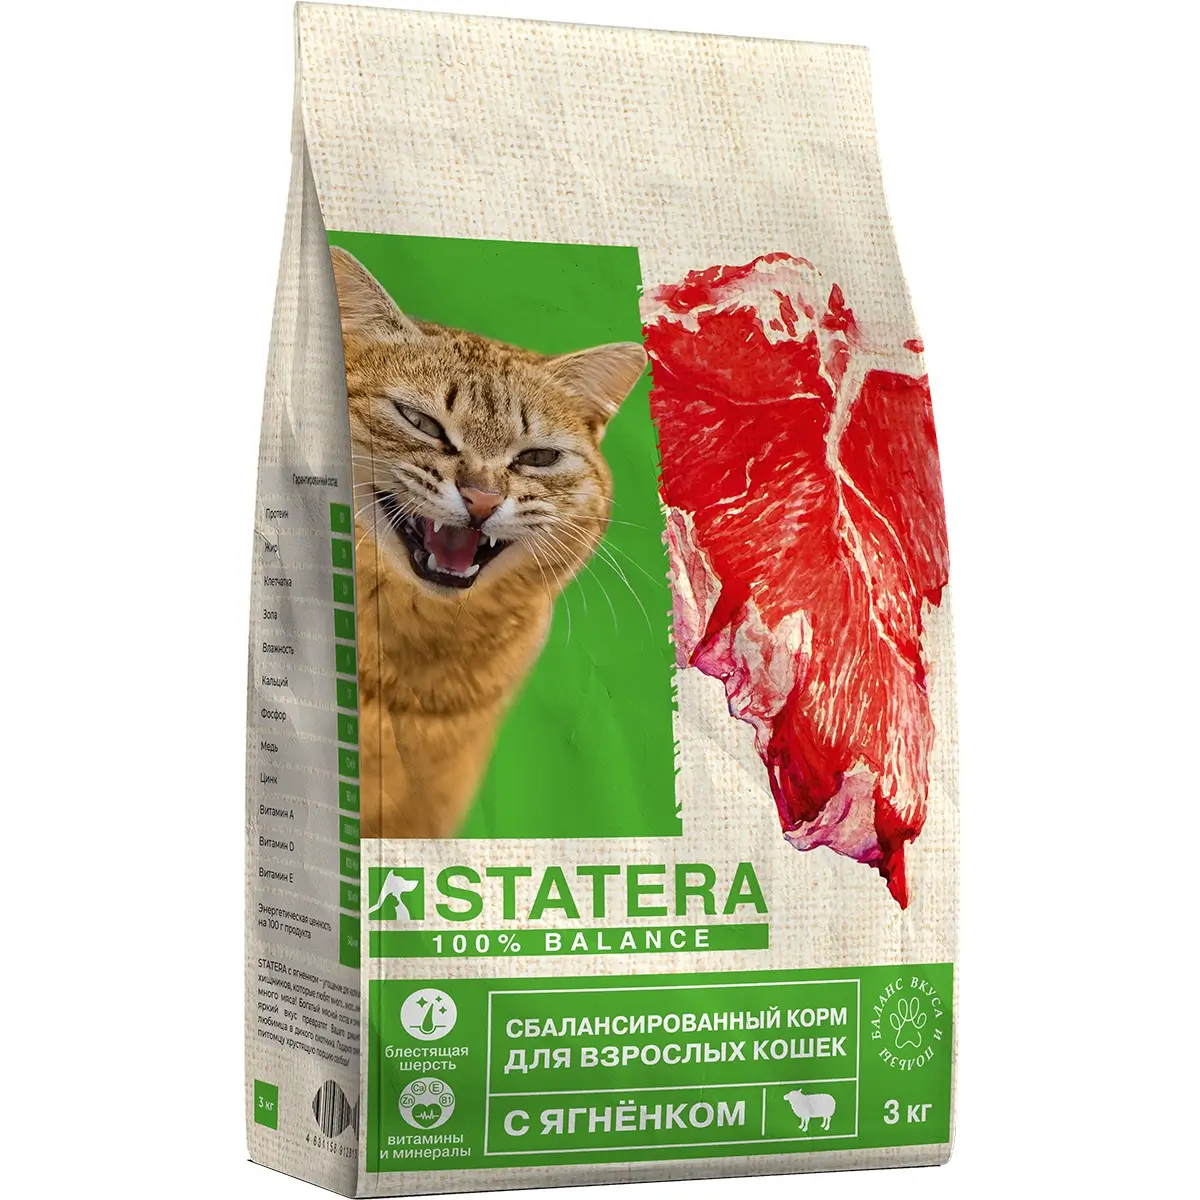 Полнорационный сухой корм Statera для кошек (С ягненком, 3кг)